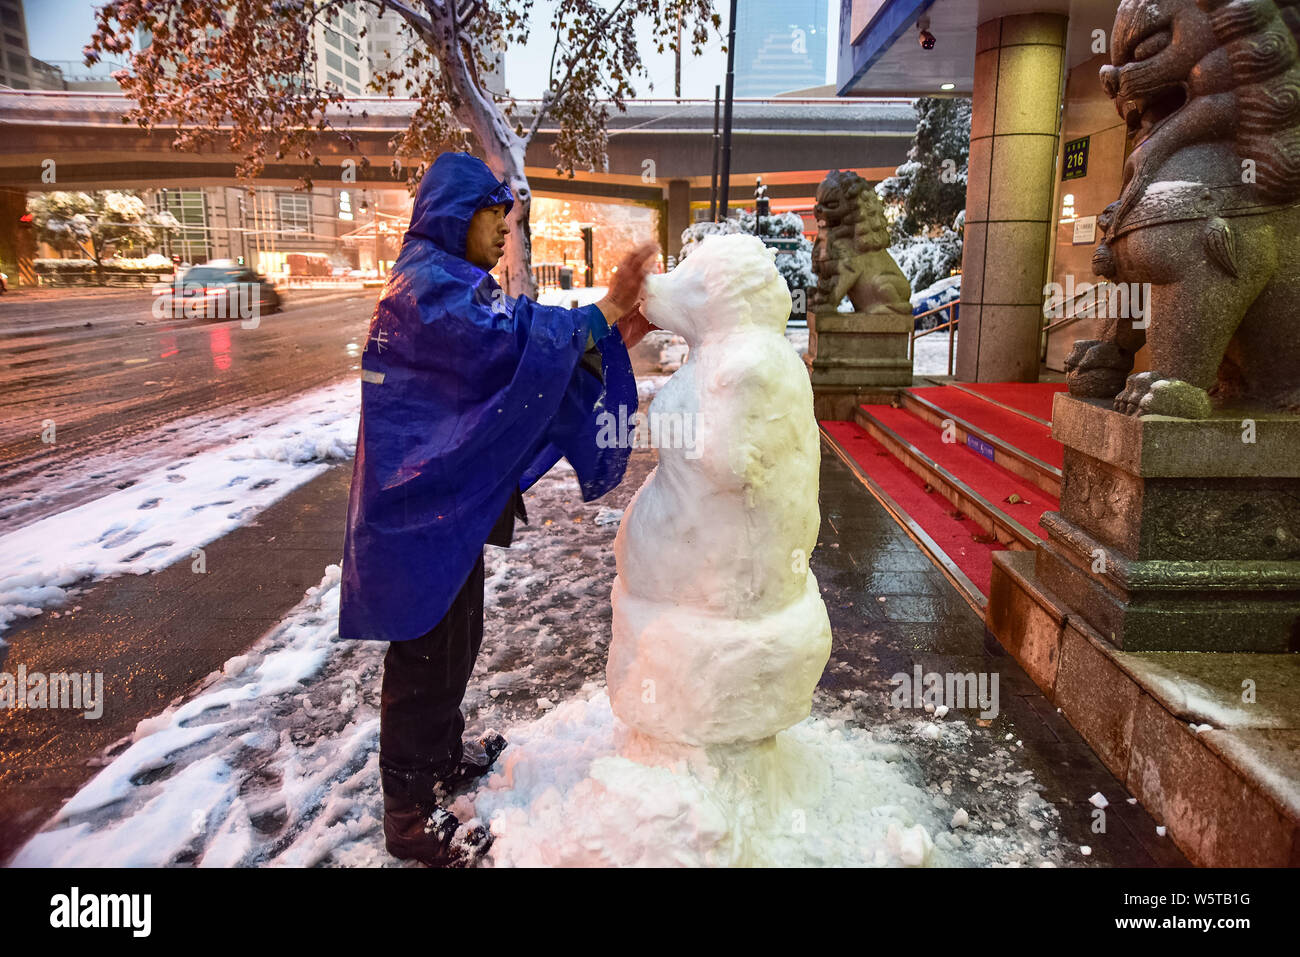 Chinesische bank Security Guard zunamen Du macht einen Schnee Skulptur mit der Form von Zhu Bajie, ein Charakter aus der Chinesischen klassischen Reise in die W Stockfoto